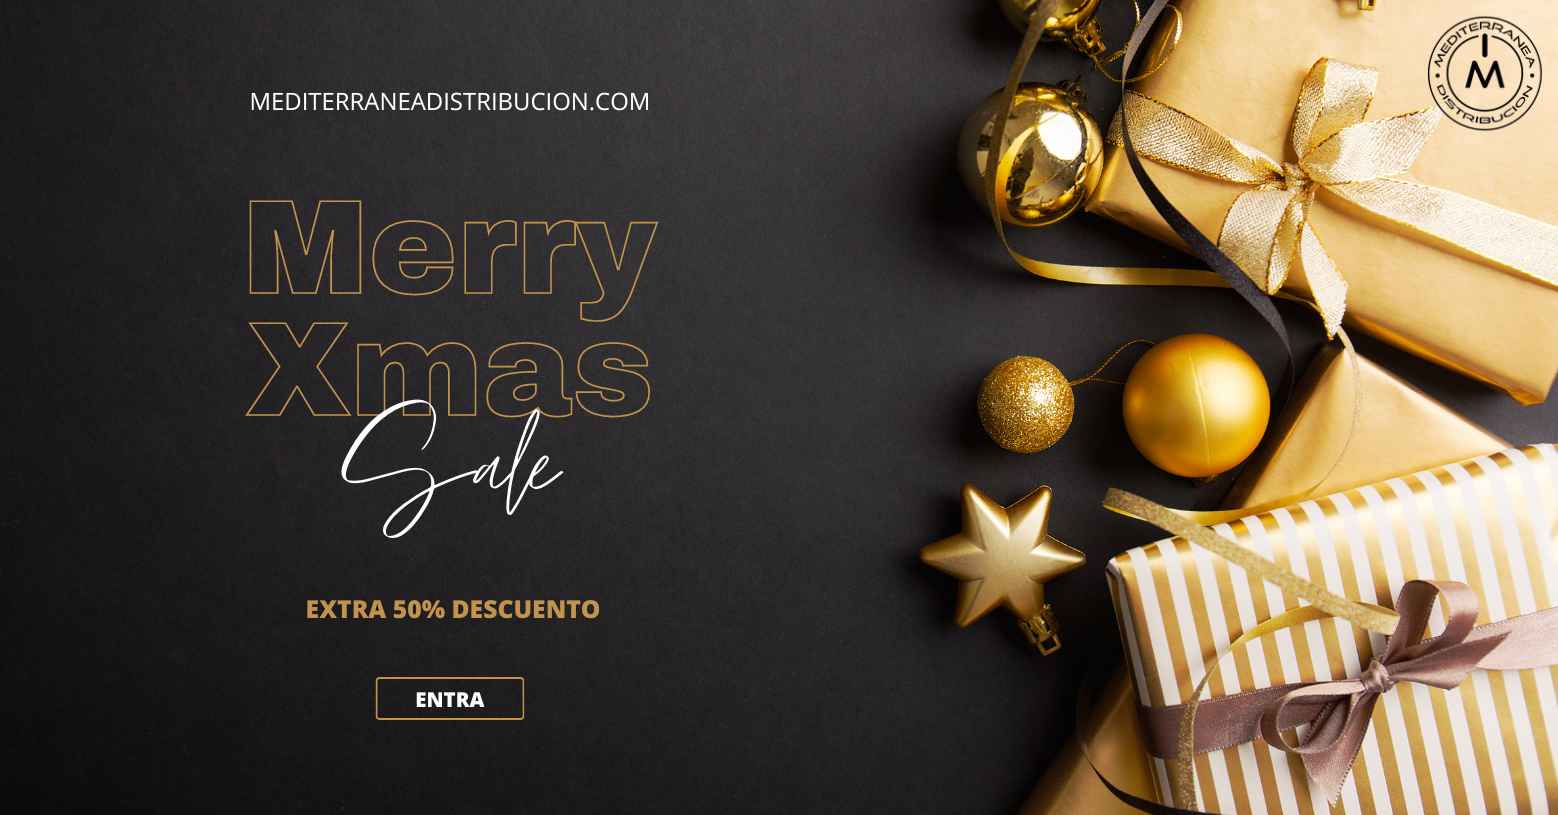 Merry Christmas co 50 % off en Mediterranea Distribucion